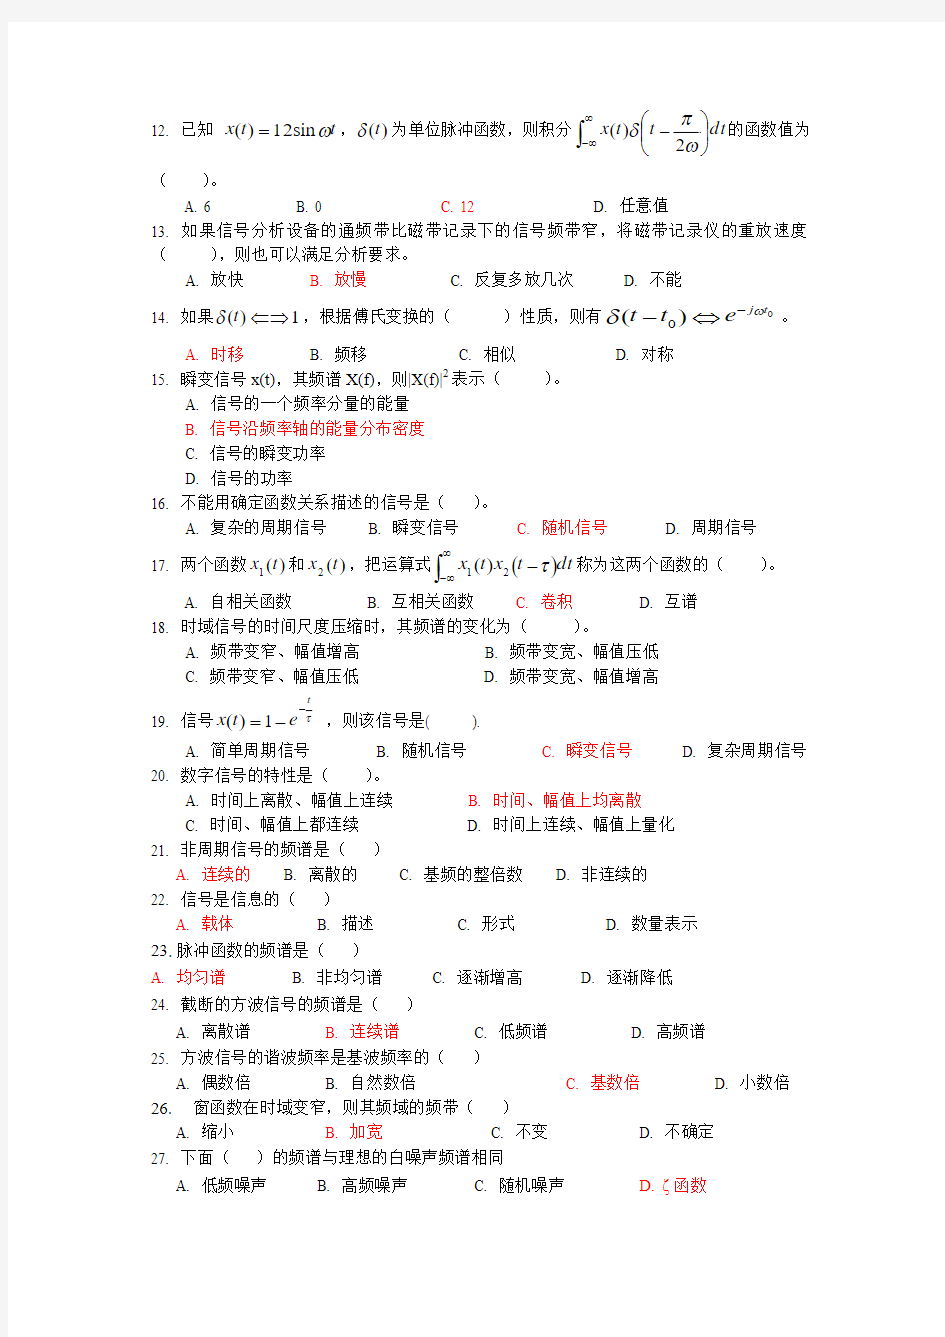 2011江苏大学机械工程测试技术-期末试题库(汇总)